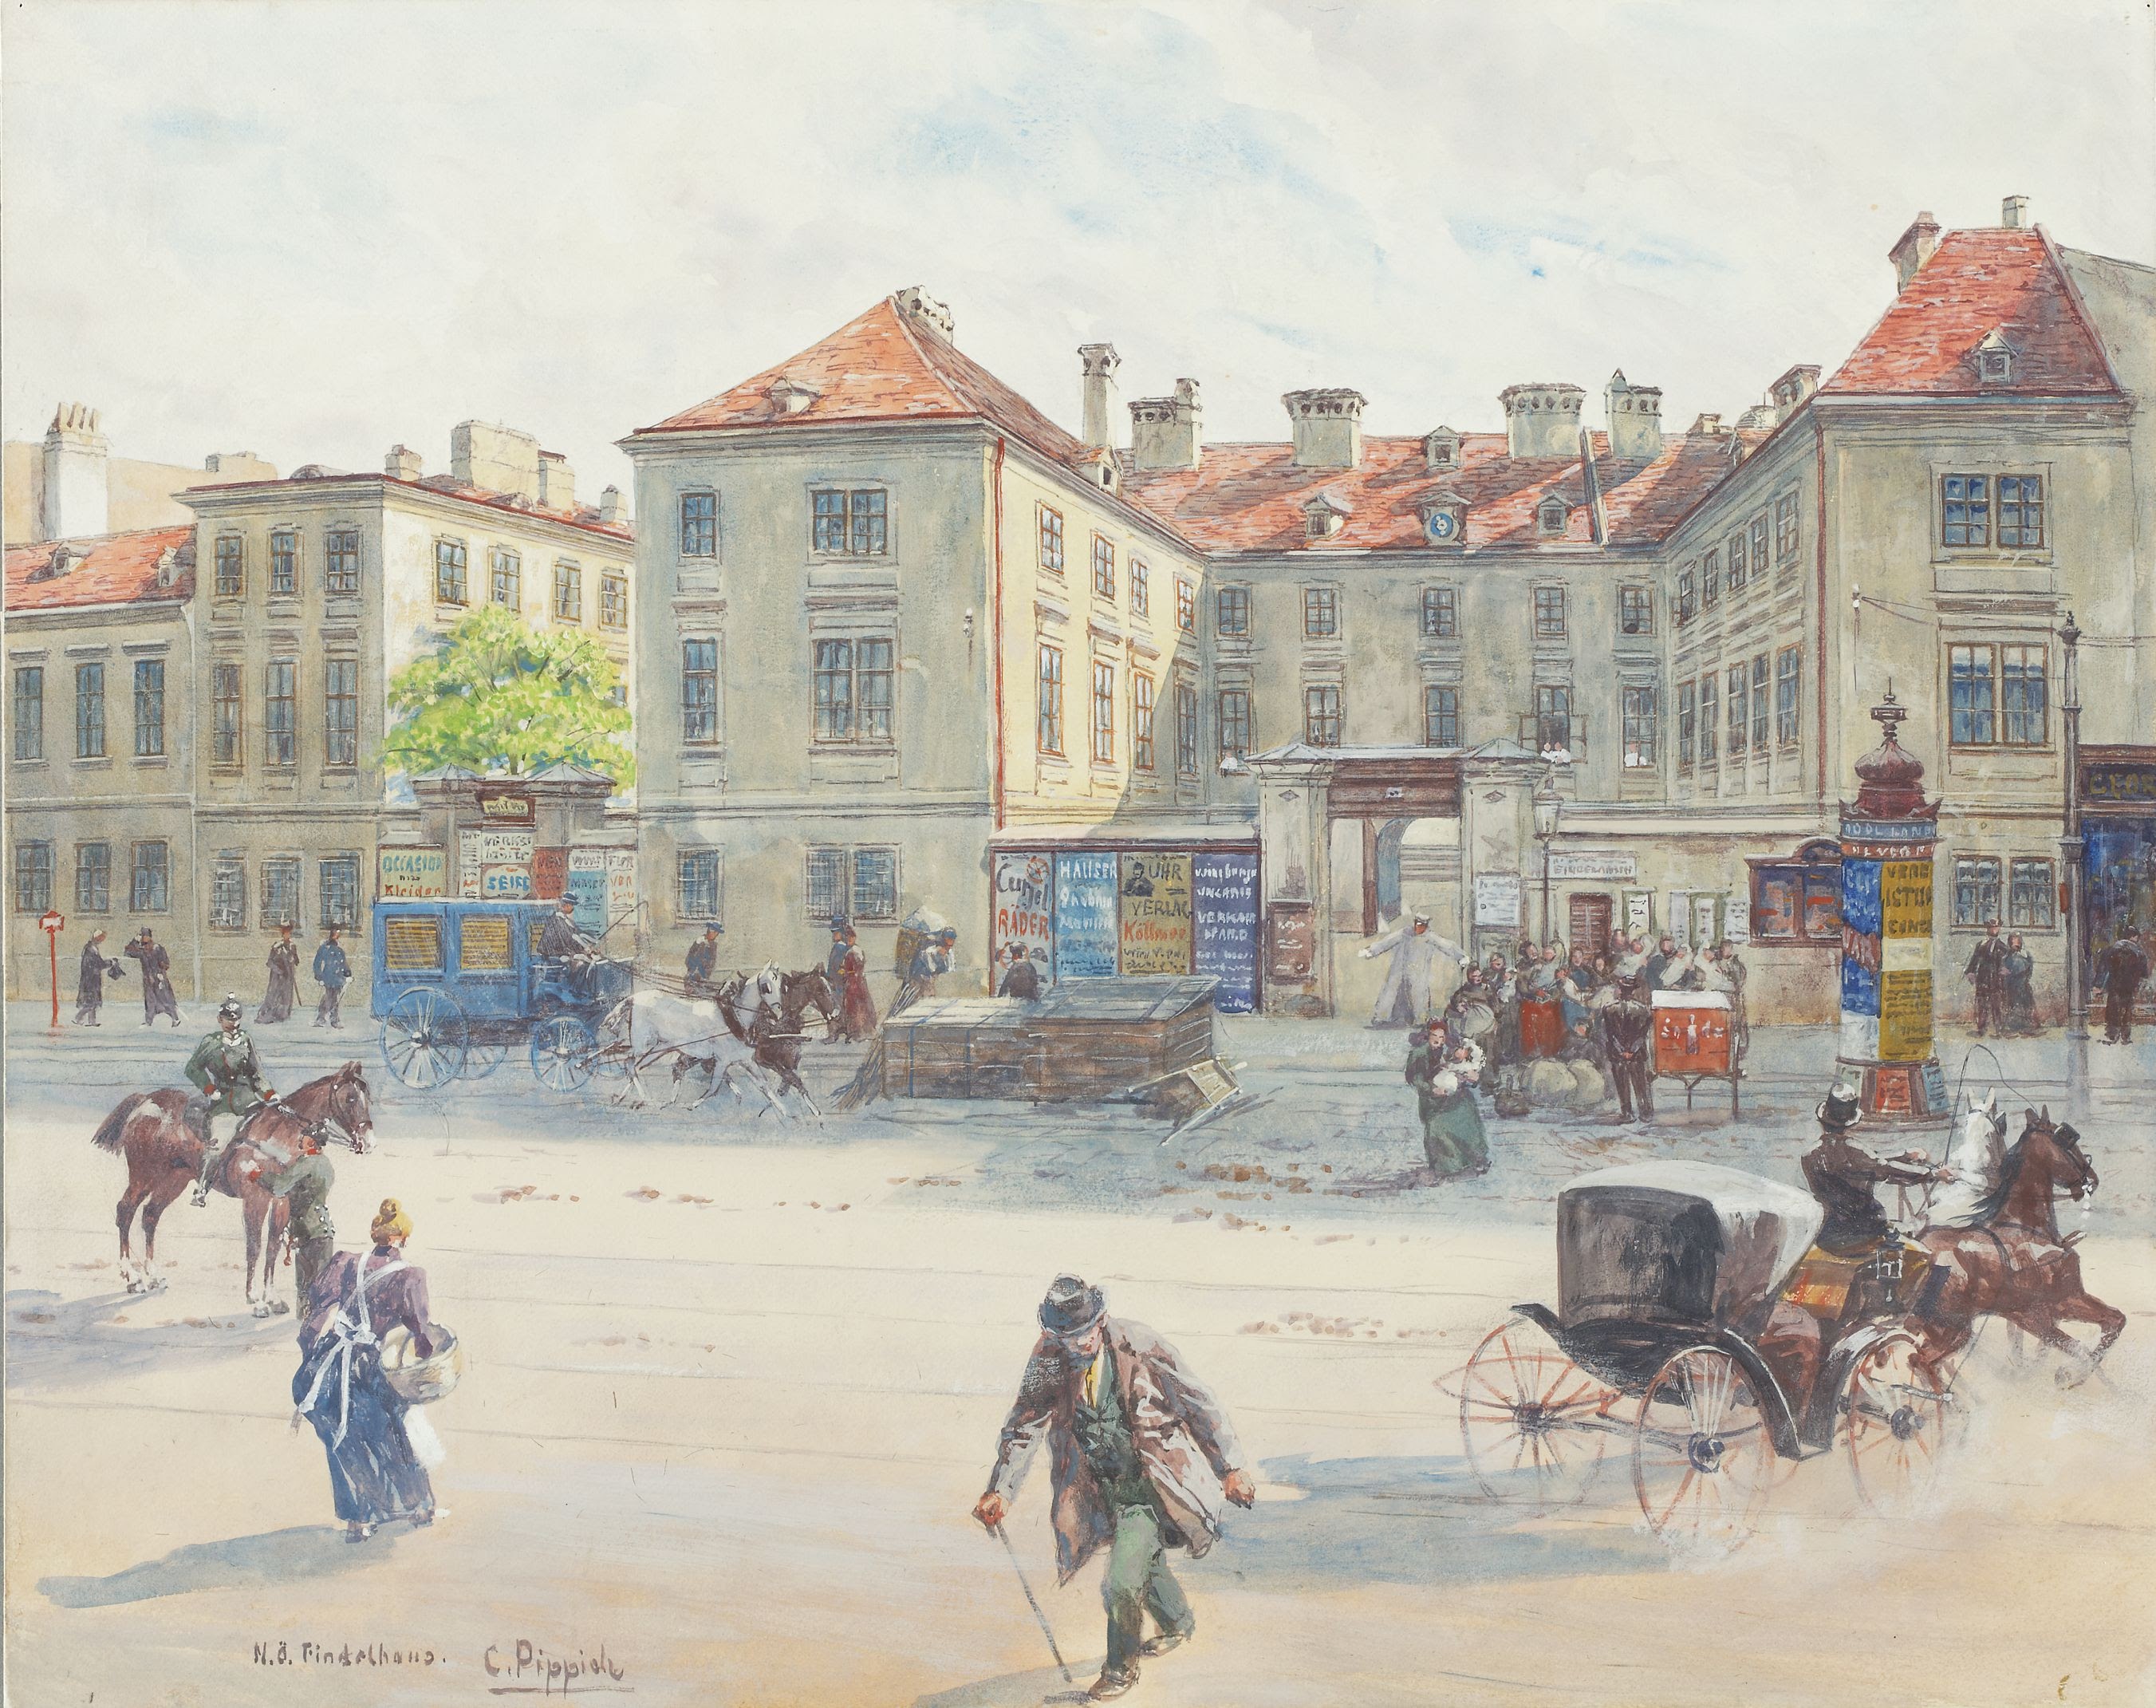 Carl Pippich: 8., Alser Straße – niederösterreichisches Findelhaus, 1880-1890 © Wien Museum